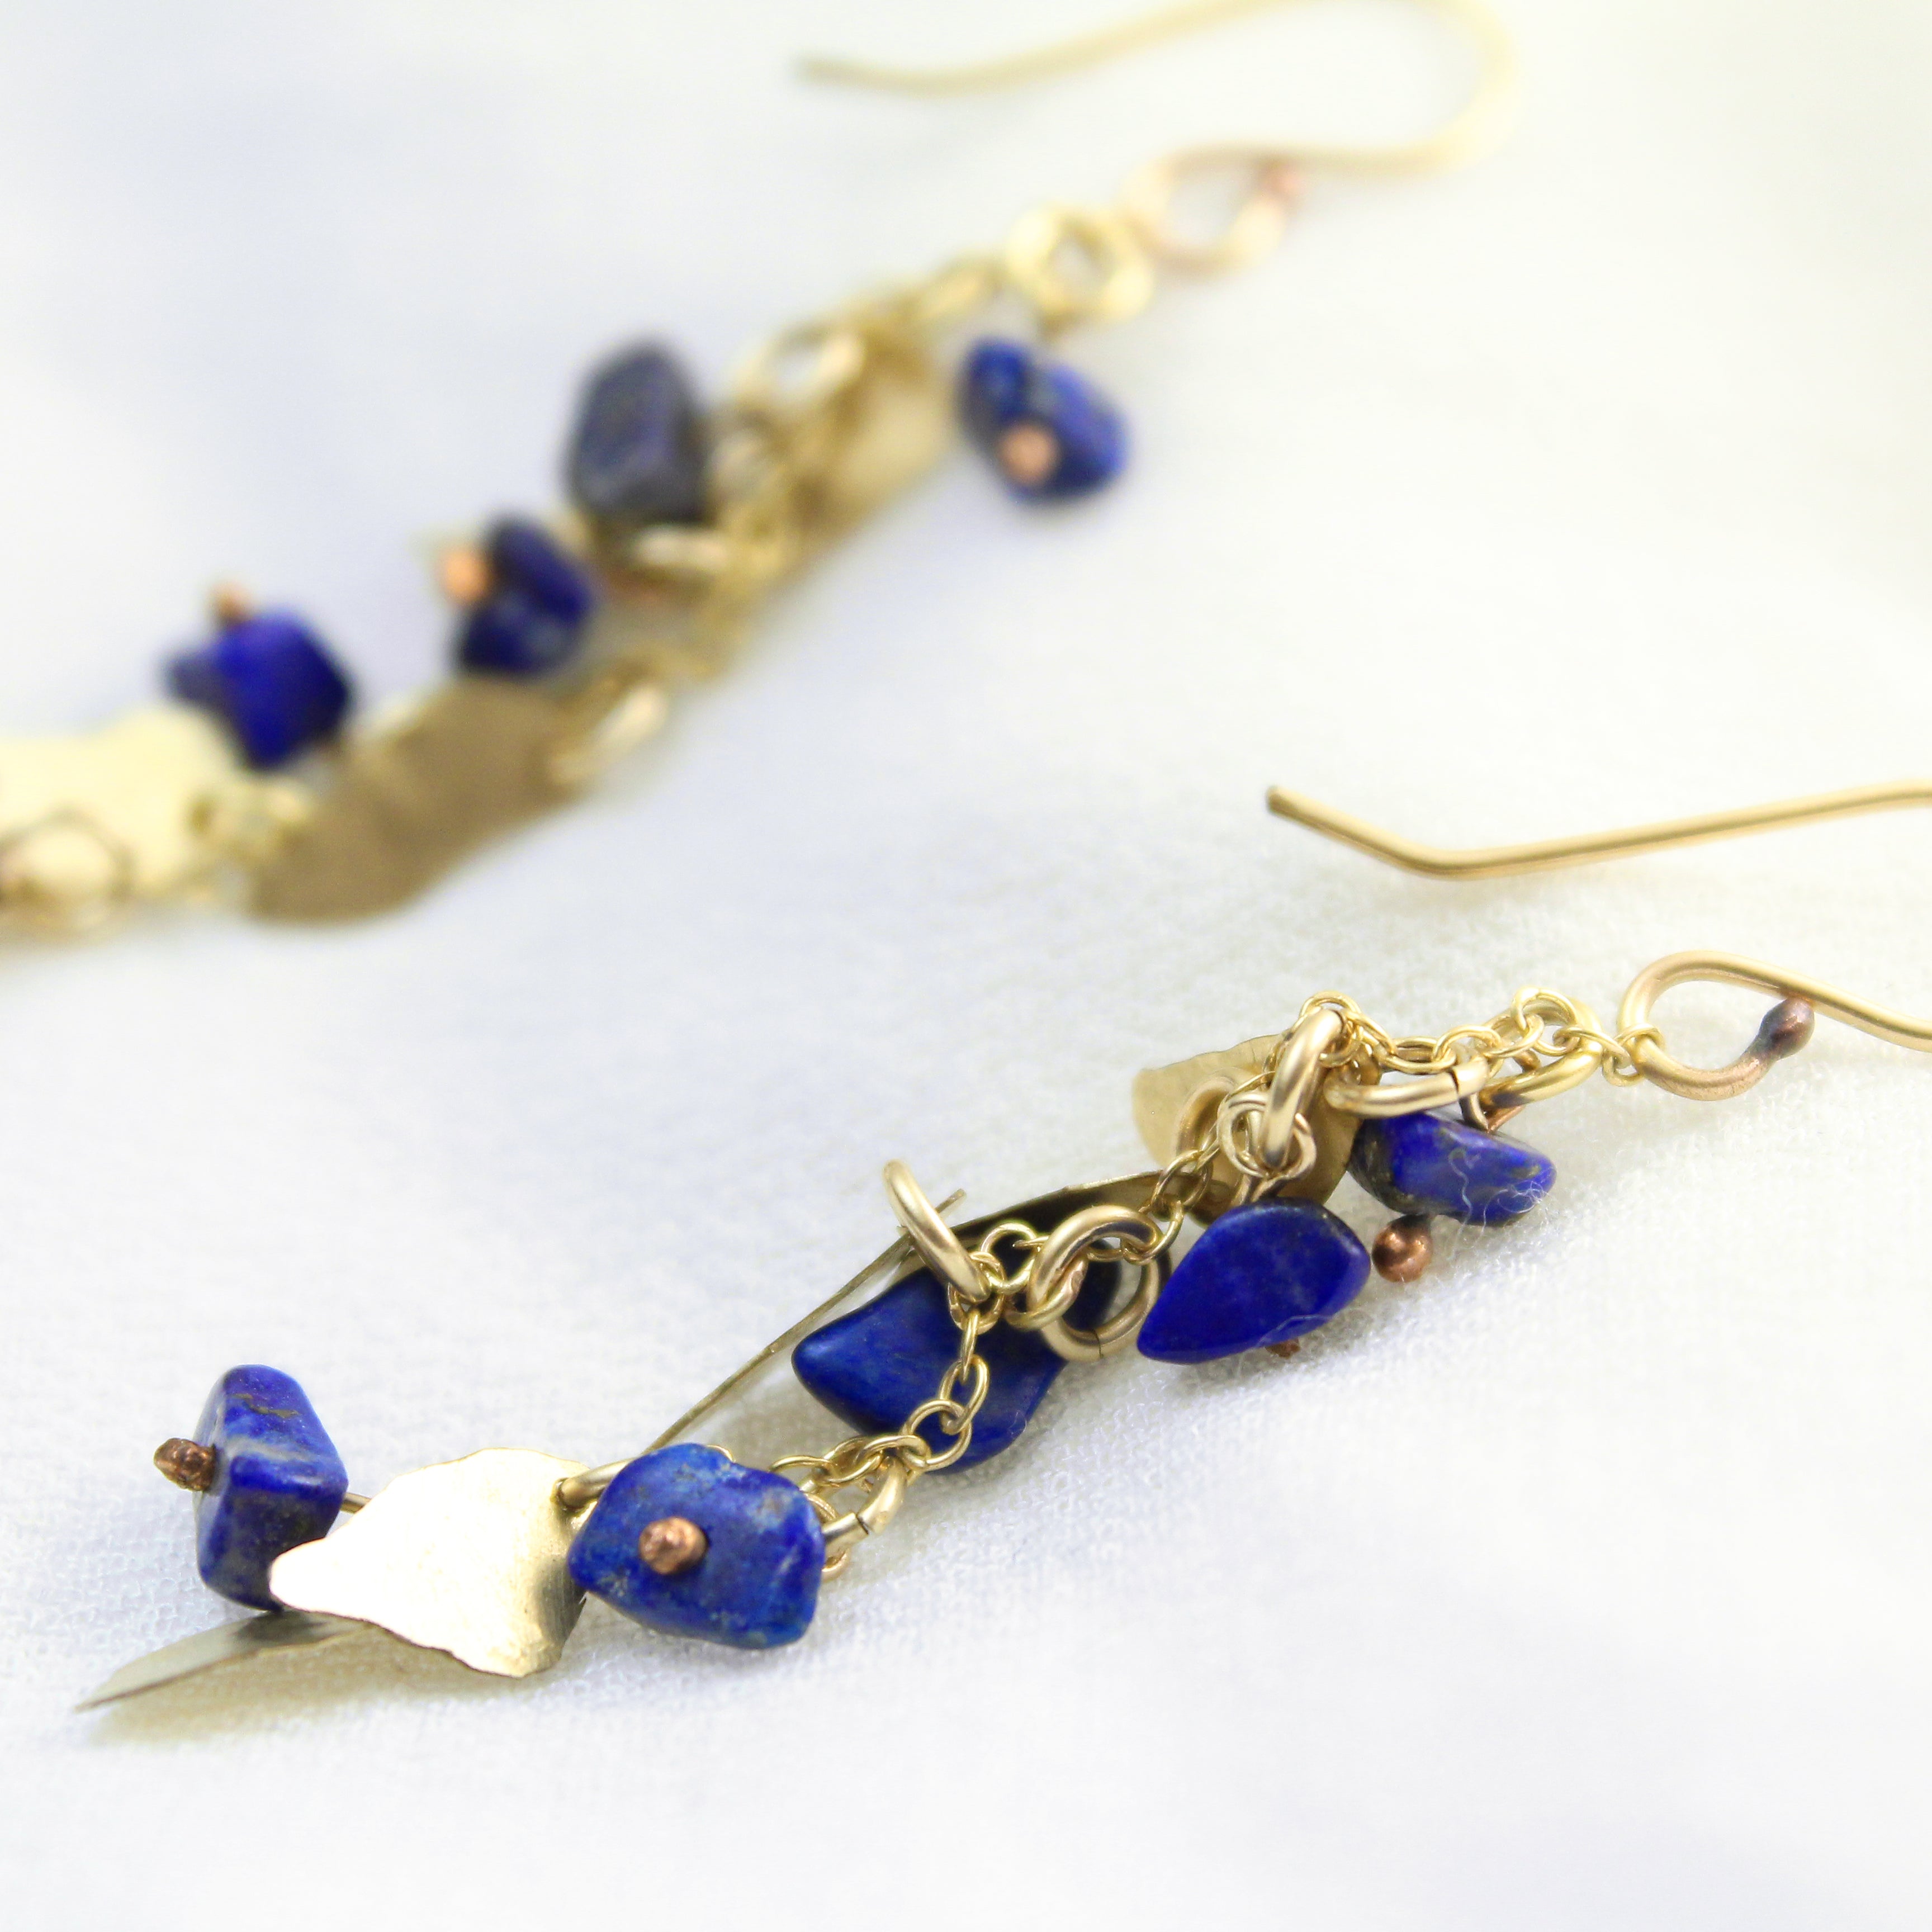 Golden Leaves - Gold-Filled Leaves & Lapis Lazuli Earrings